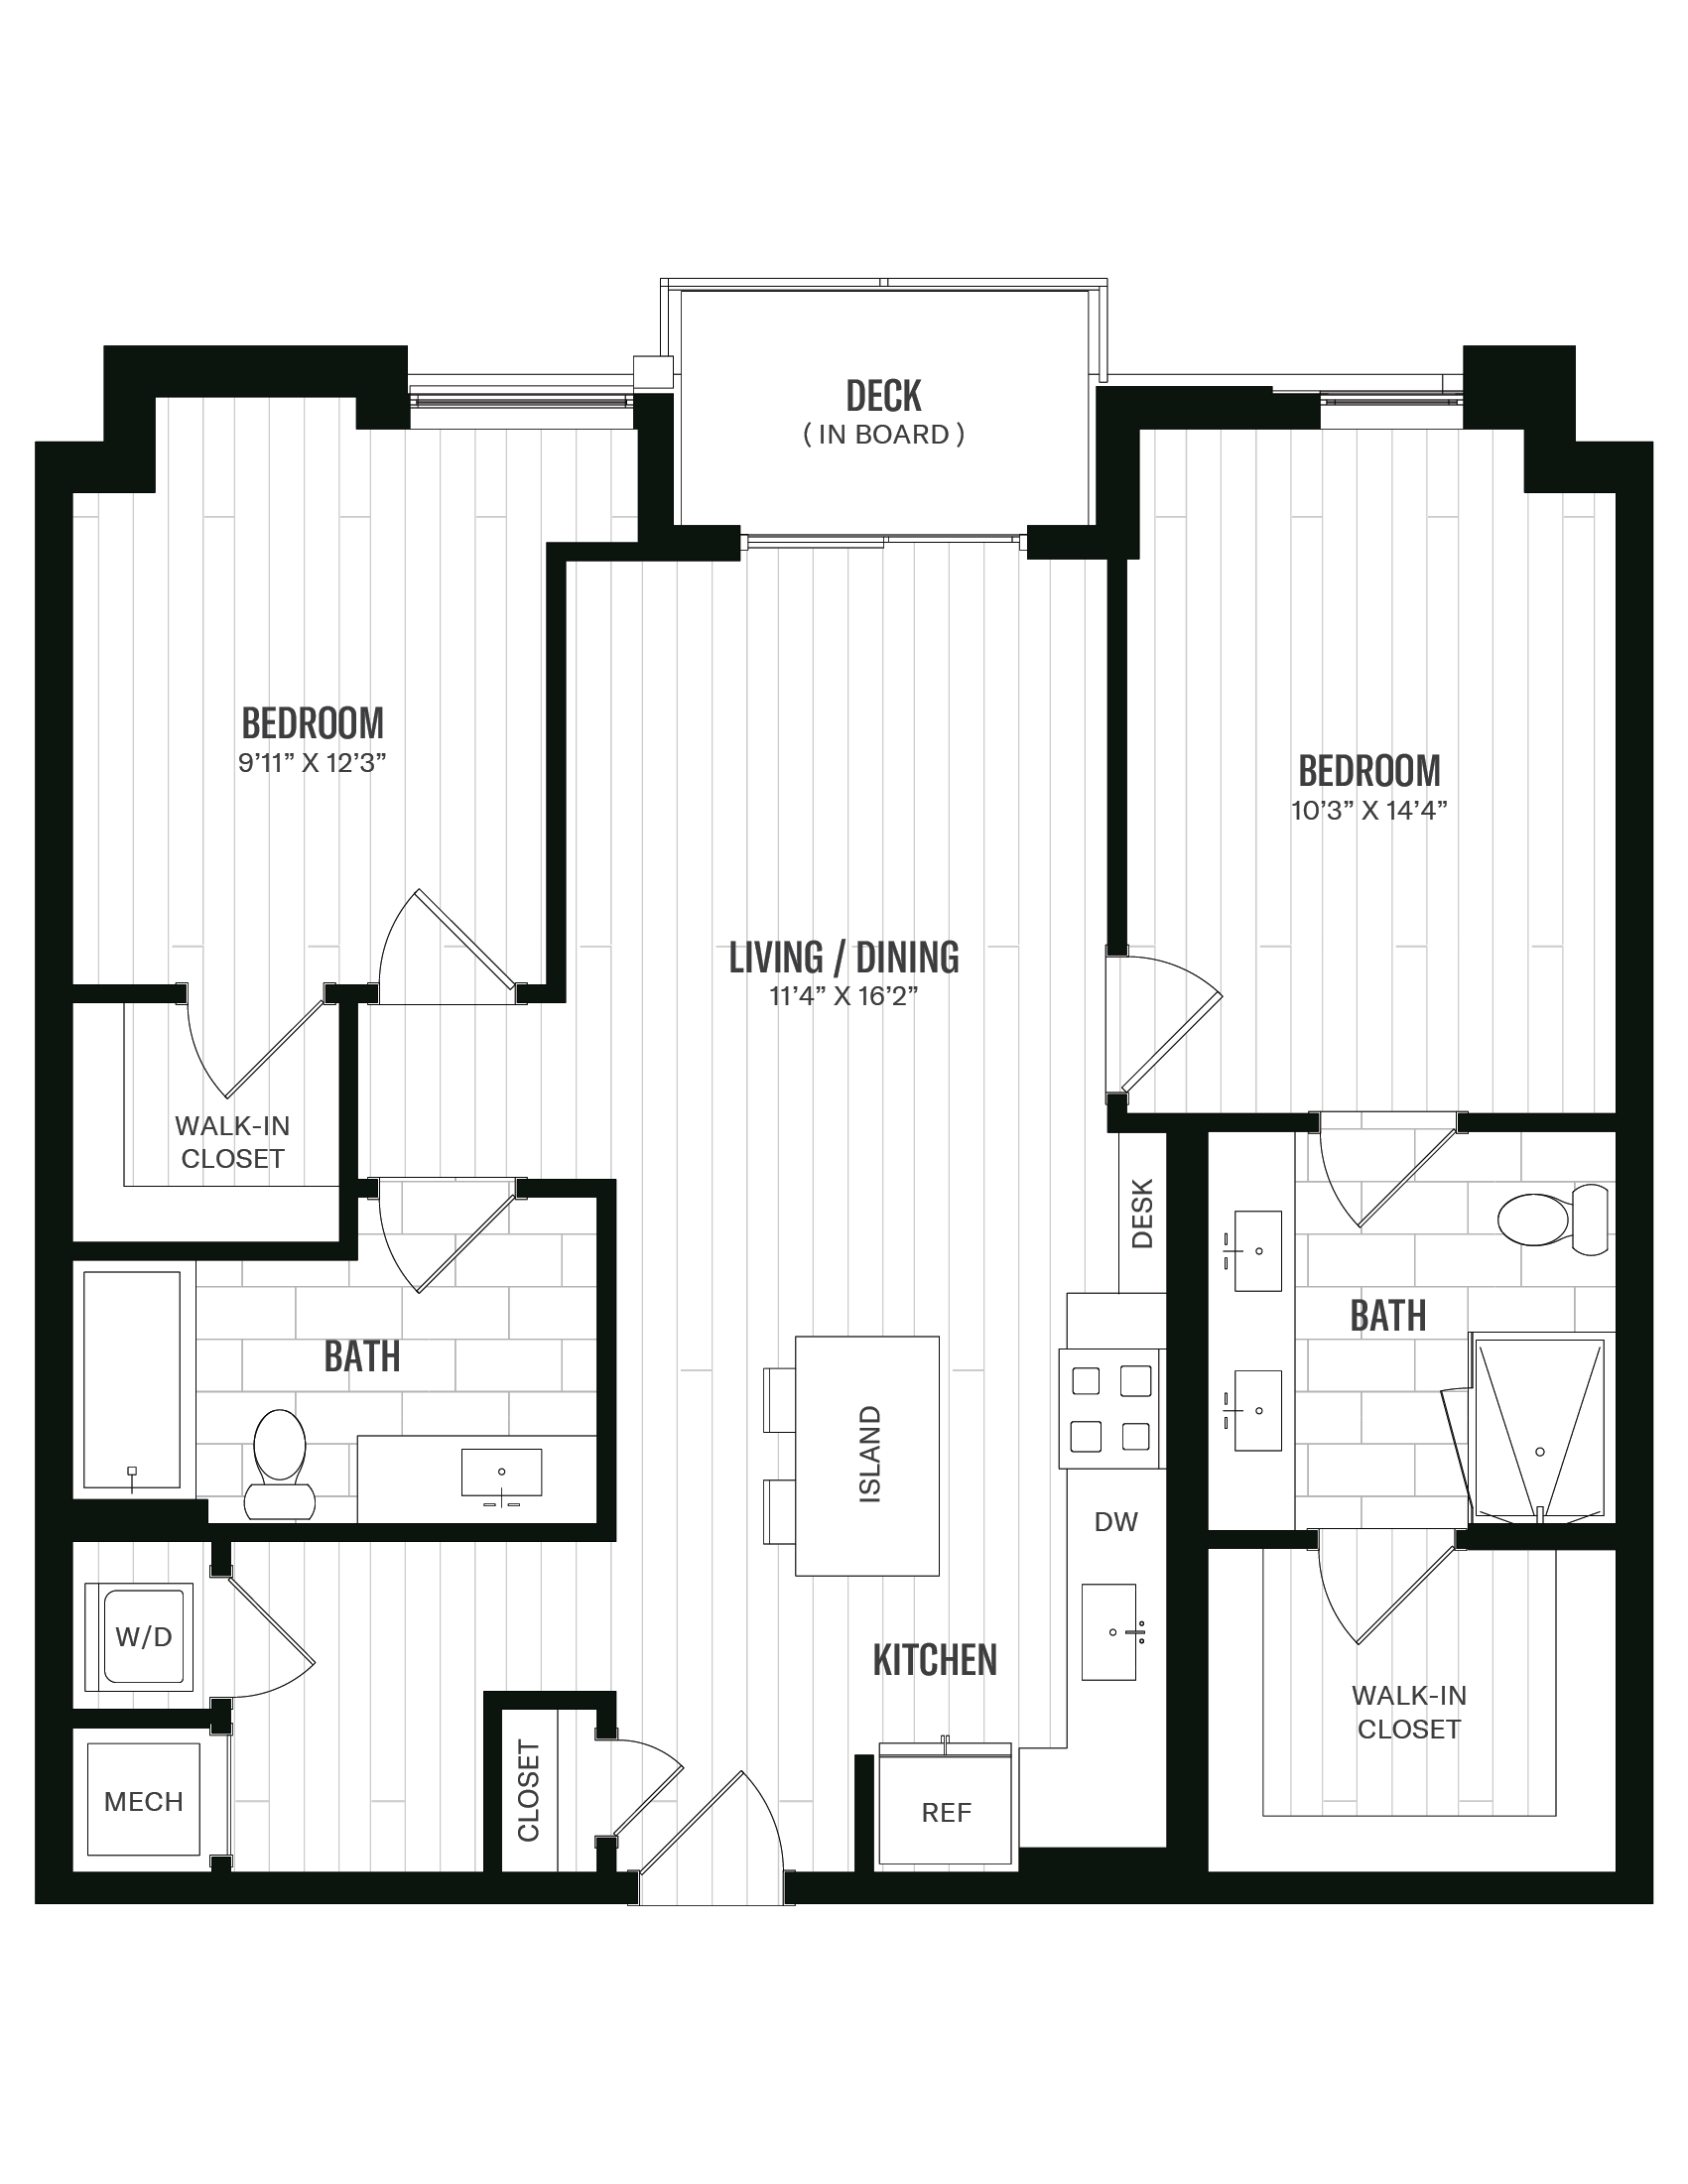 Floorplan image of unit 550